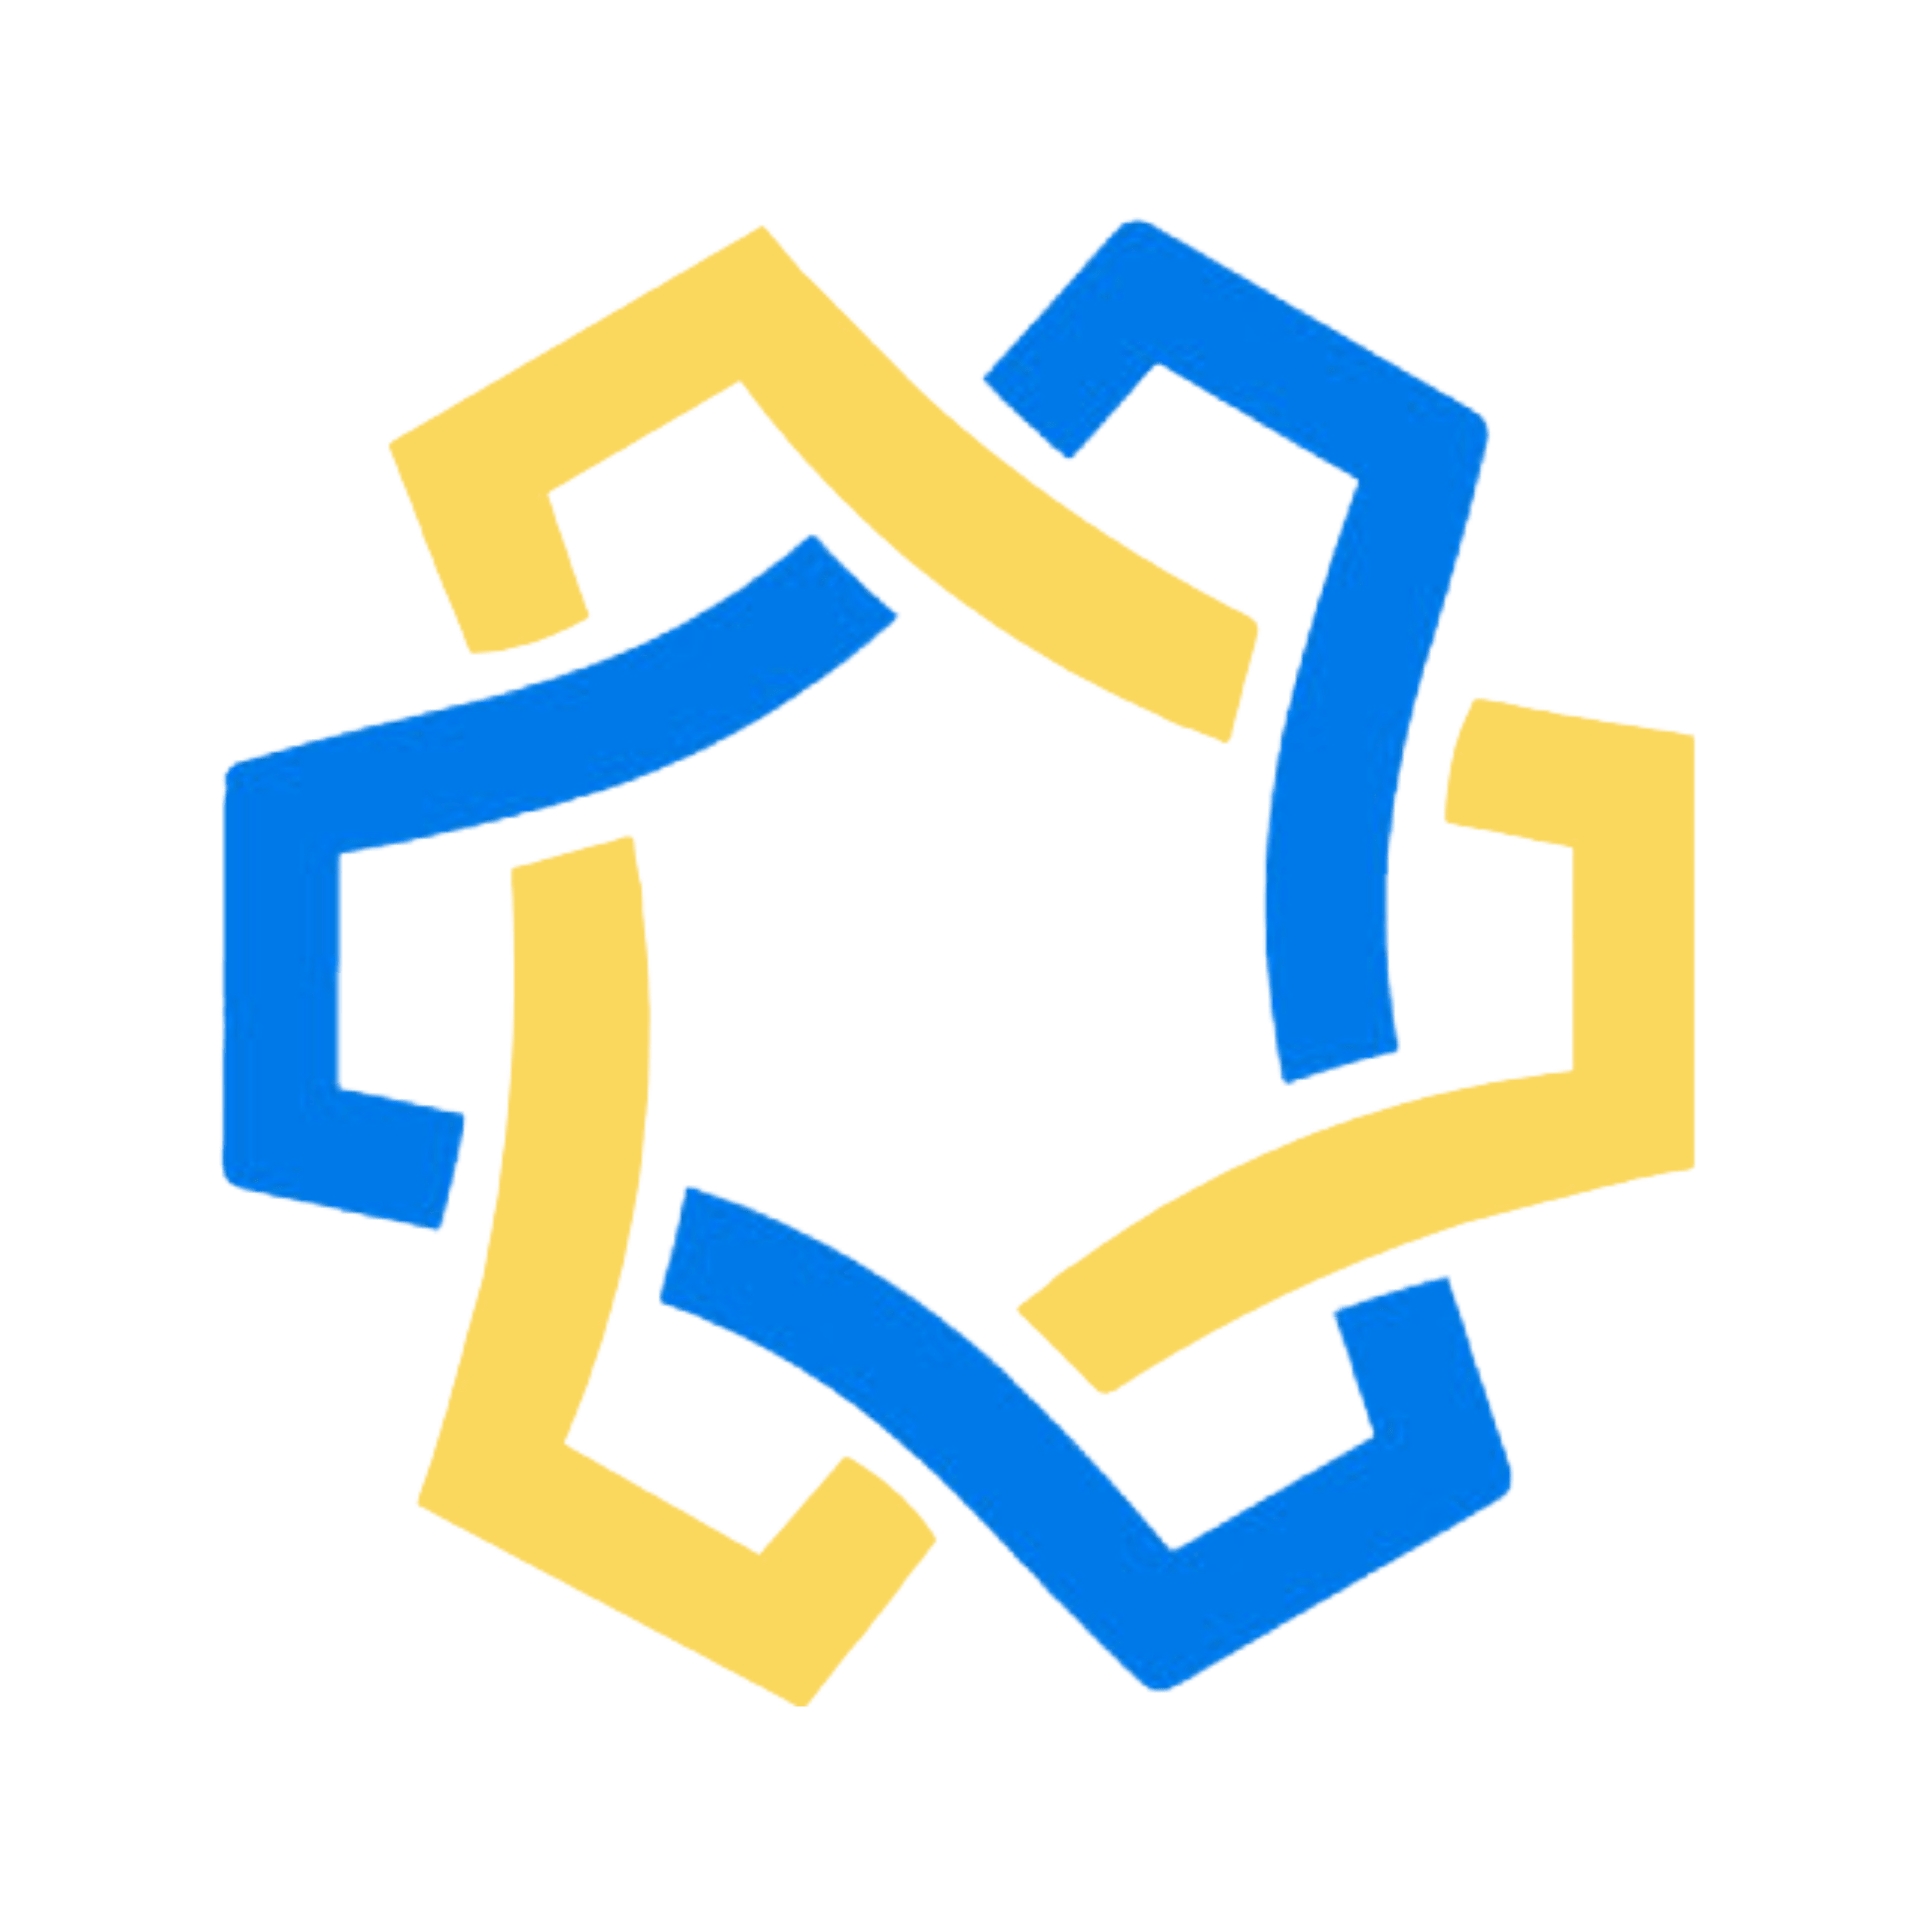 blueprint-logo